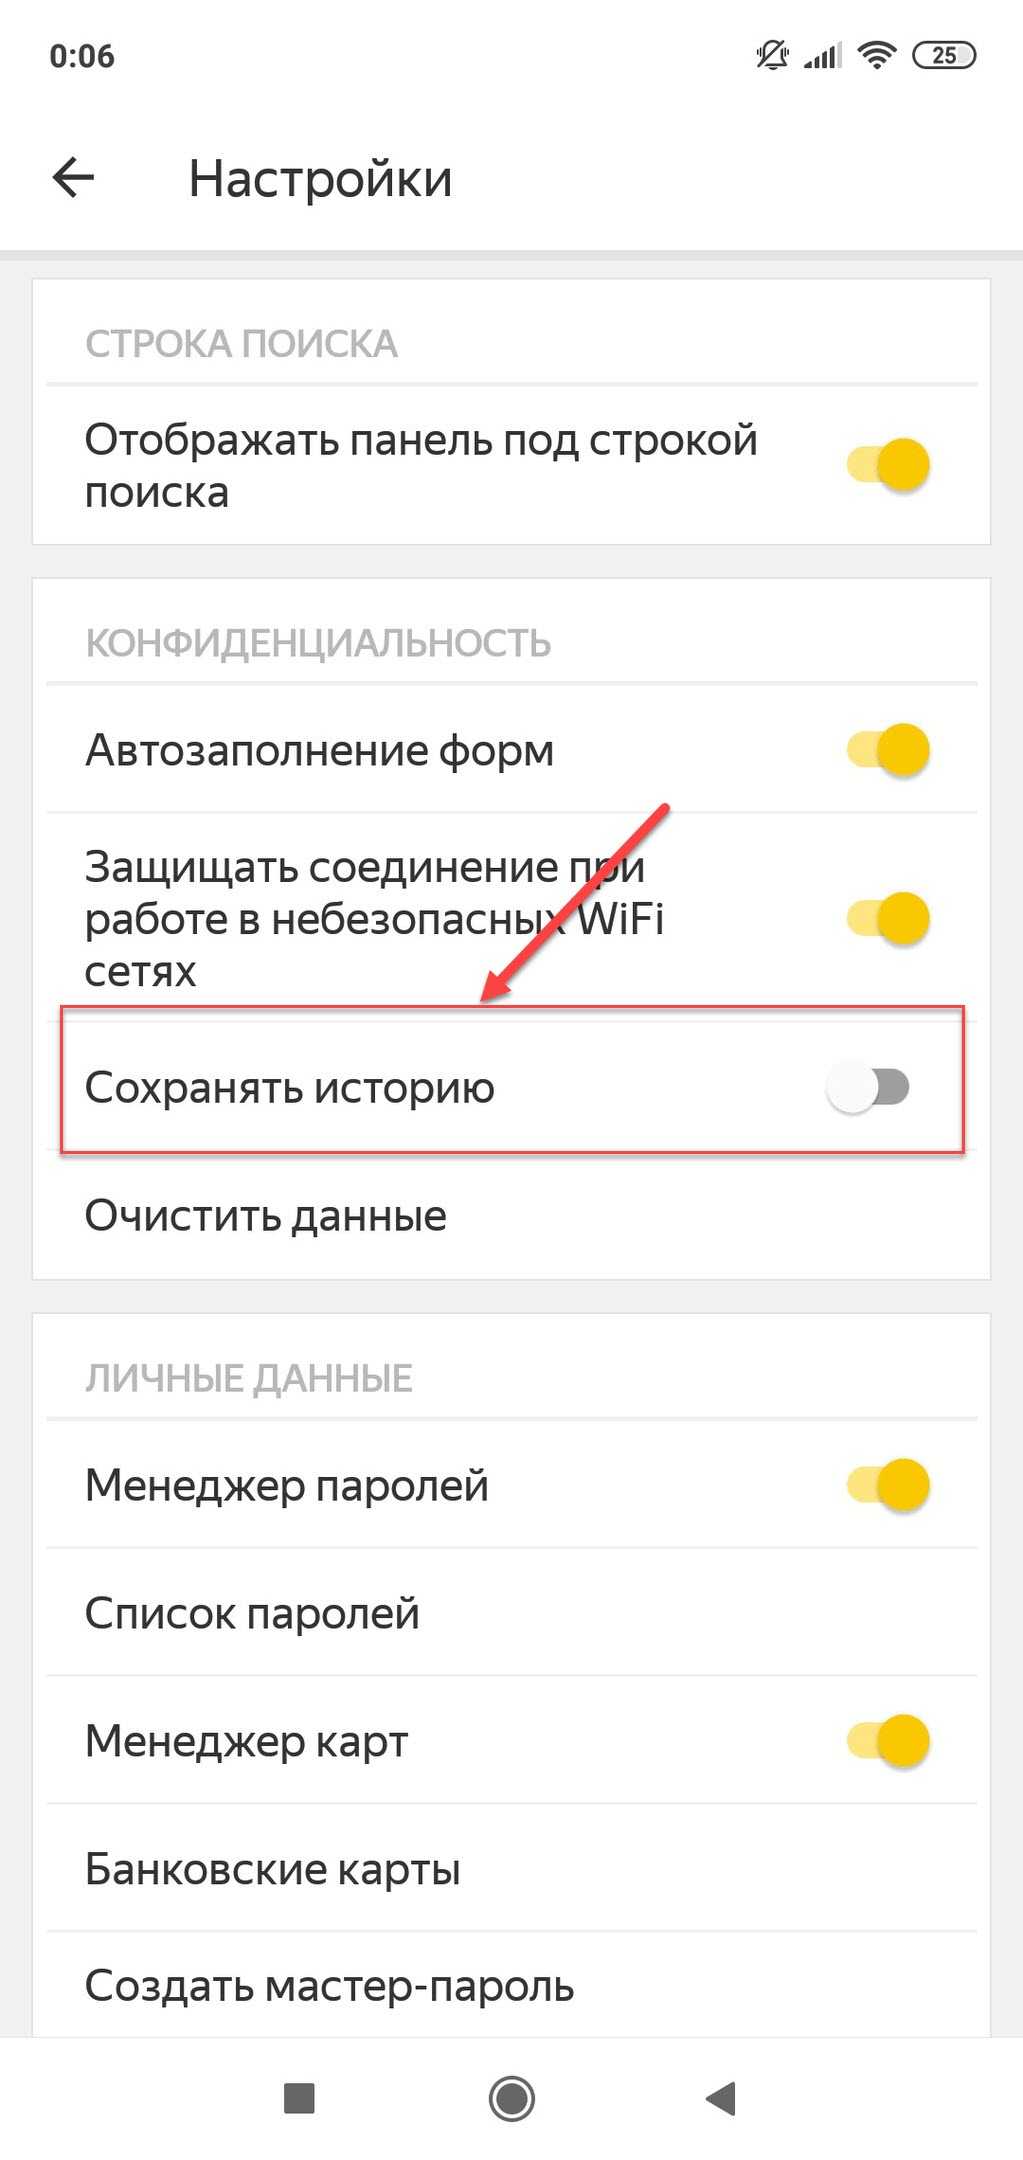 Как отключить историю в яндексе на телефоне. Очистить историю поиска в Яндексе на телефоне андроид. Как очистить историю в Яндексе на телефоне. Как удалить историю поиска в Яндексе на телефоне. Очистка истории в Яндексе на телефоне.